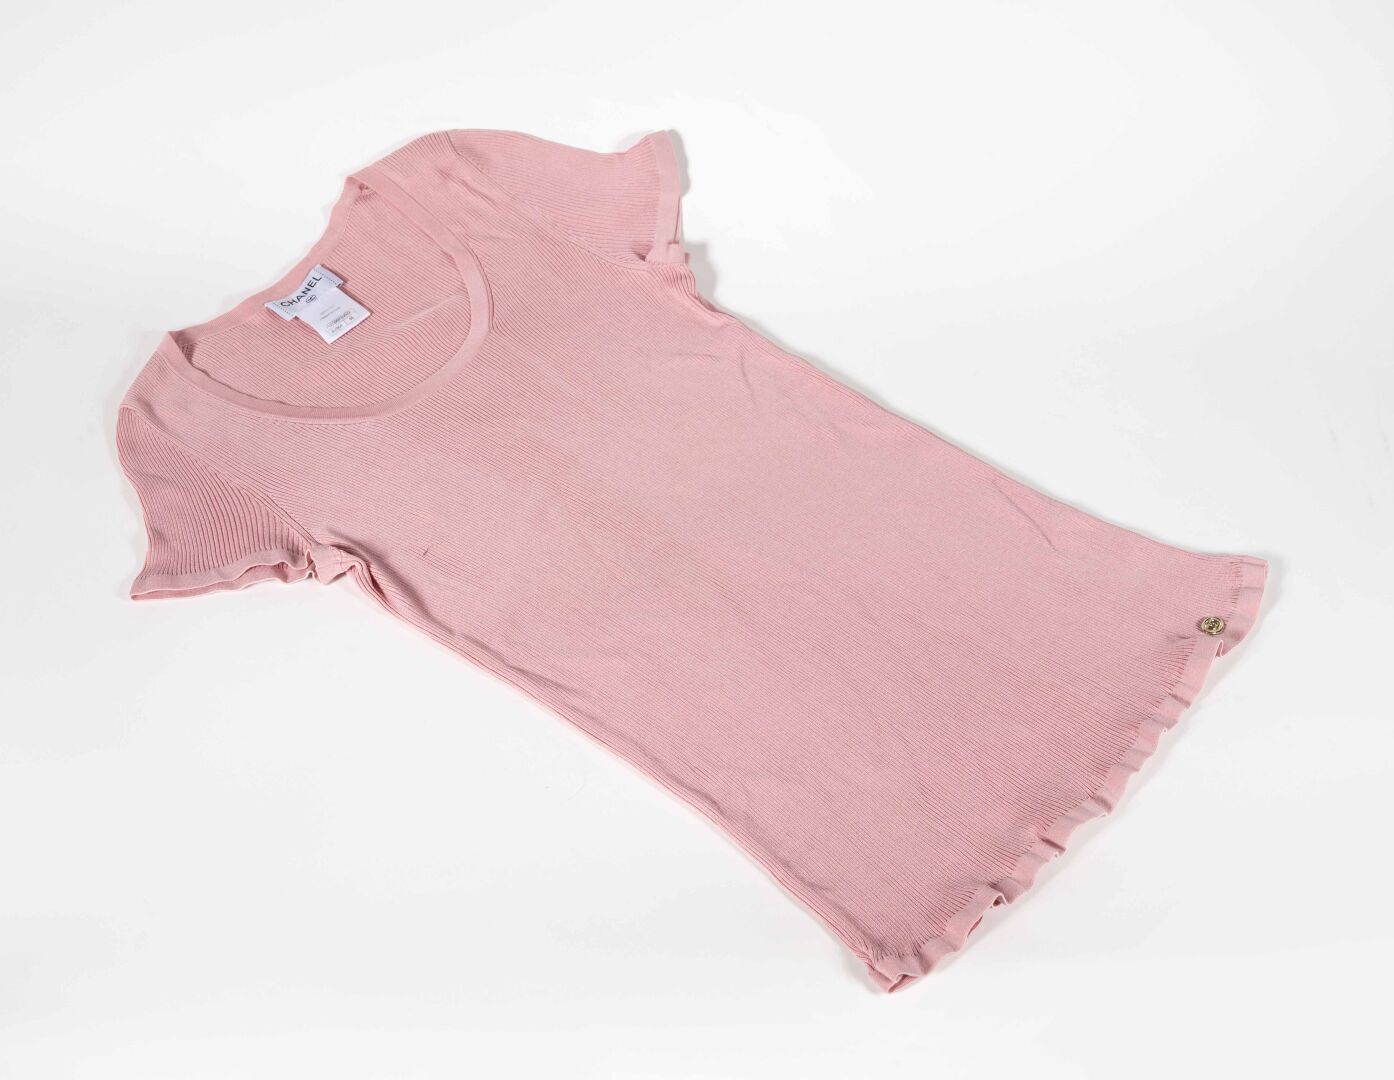 CHANEL Tee-shirt en coton et polyester rose, taille 46

Bon état, petite tâche s&hellip;